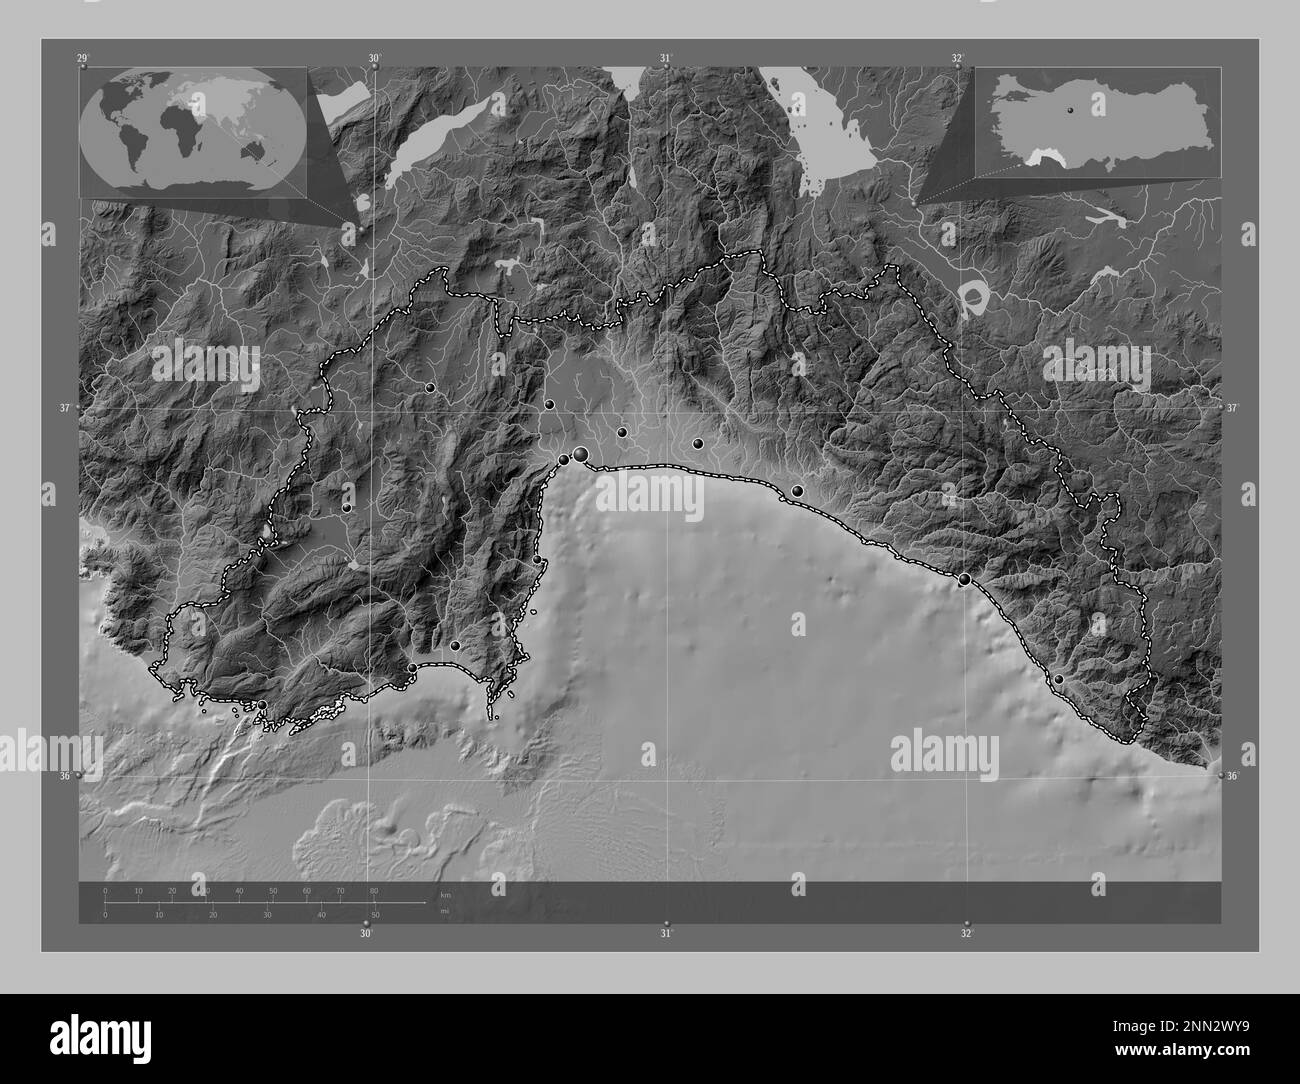 Antalya, provincia di Turkiye. Mappa in scala di grigi con laghi e fiumi. Posizioni delle principali città della regione. Mappe delle posizioni ausiliarie degli angoli Foto Stock